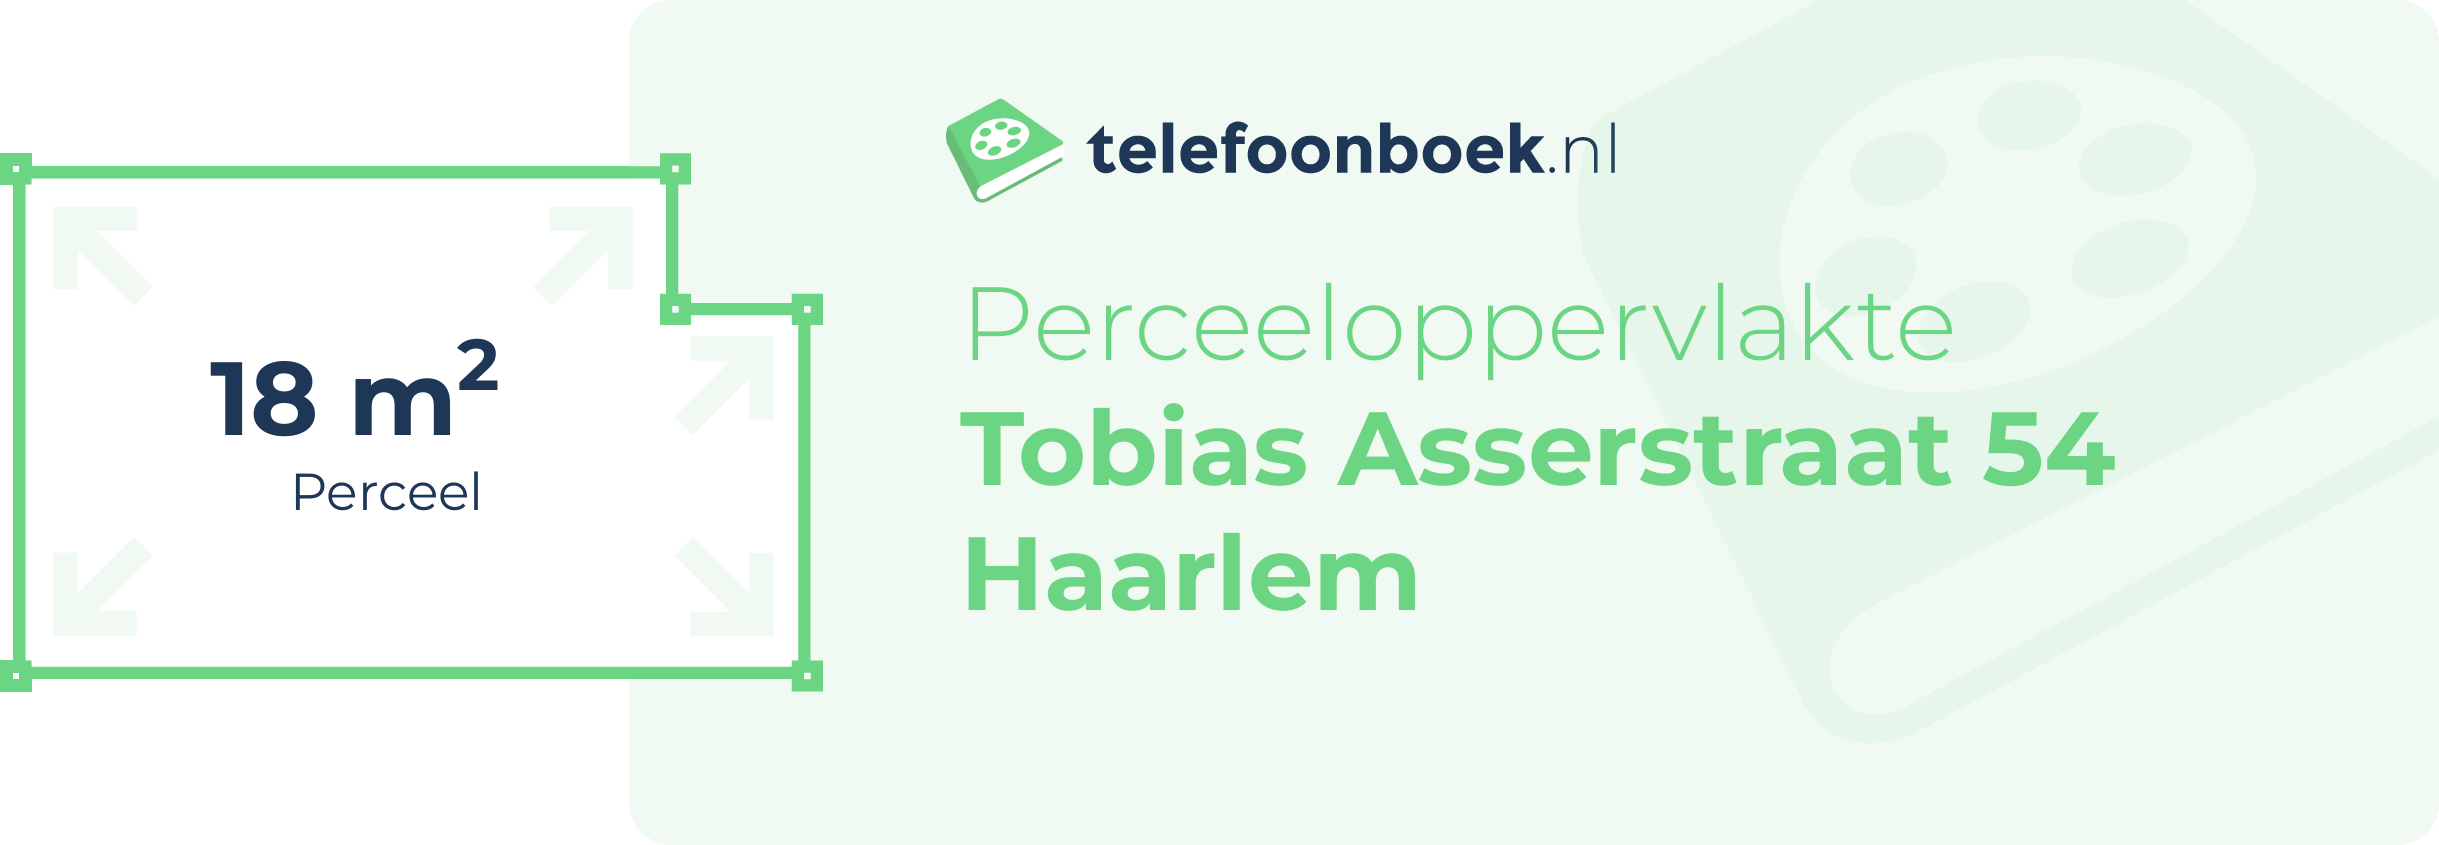 Perceeloppervlakte Tobias Asserstraat 54 Haarlem